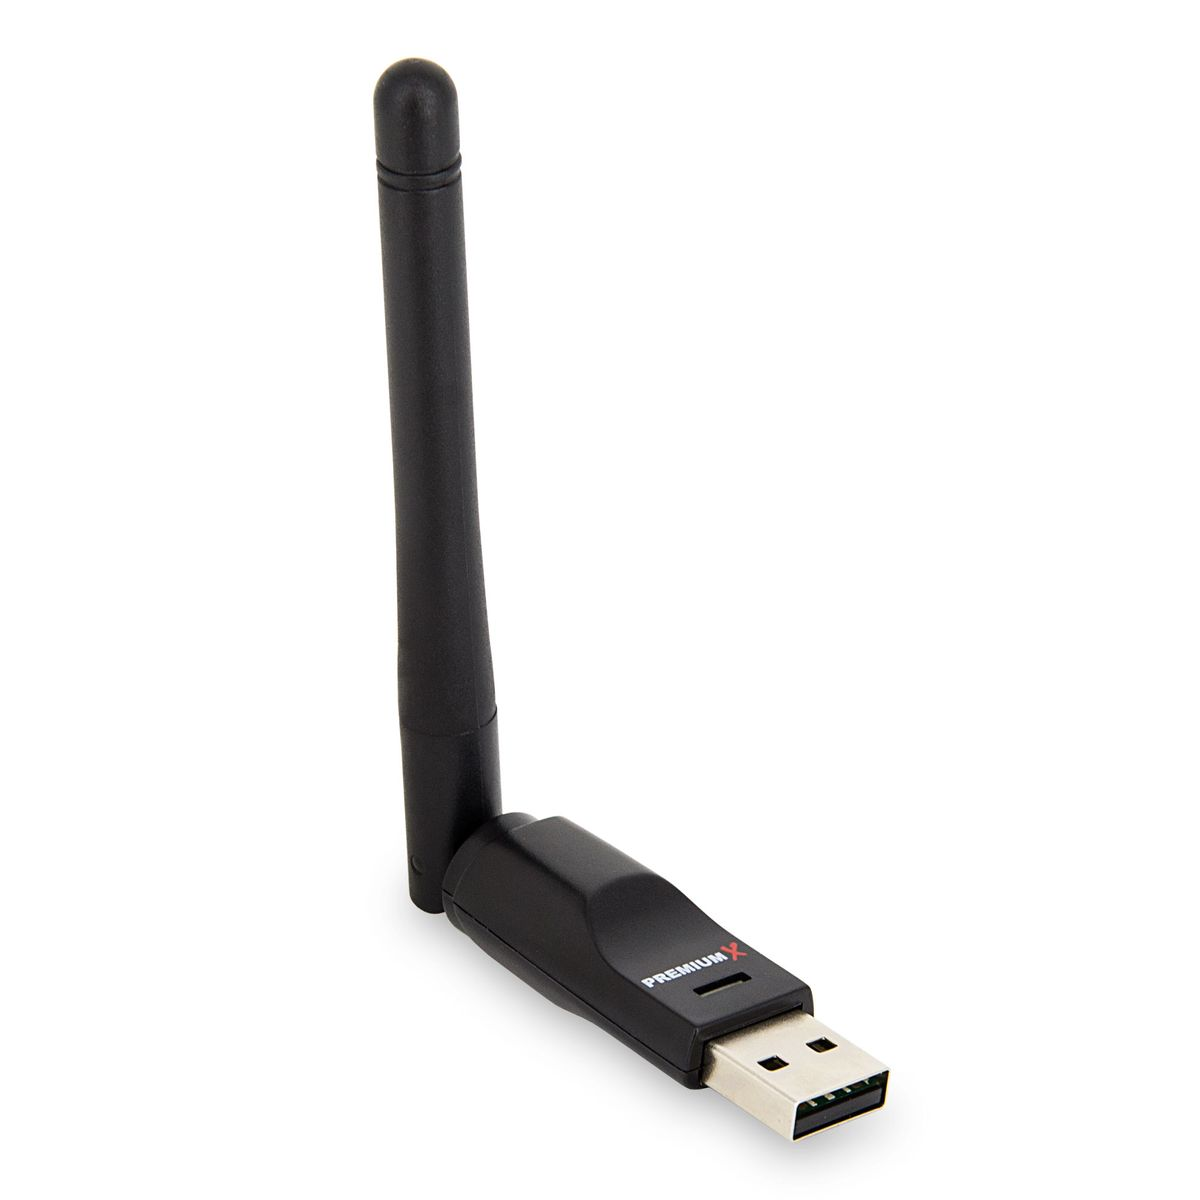 VU+ ZERO Black Digital Sat (Schwarz) Receiver SAT 1x Tuner Antenne HD 150 Receiver Sat mit FullHD Wlan-Stick DVB-S2 Linux Mbits